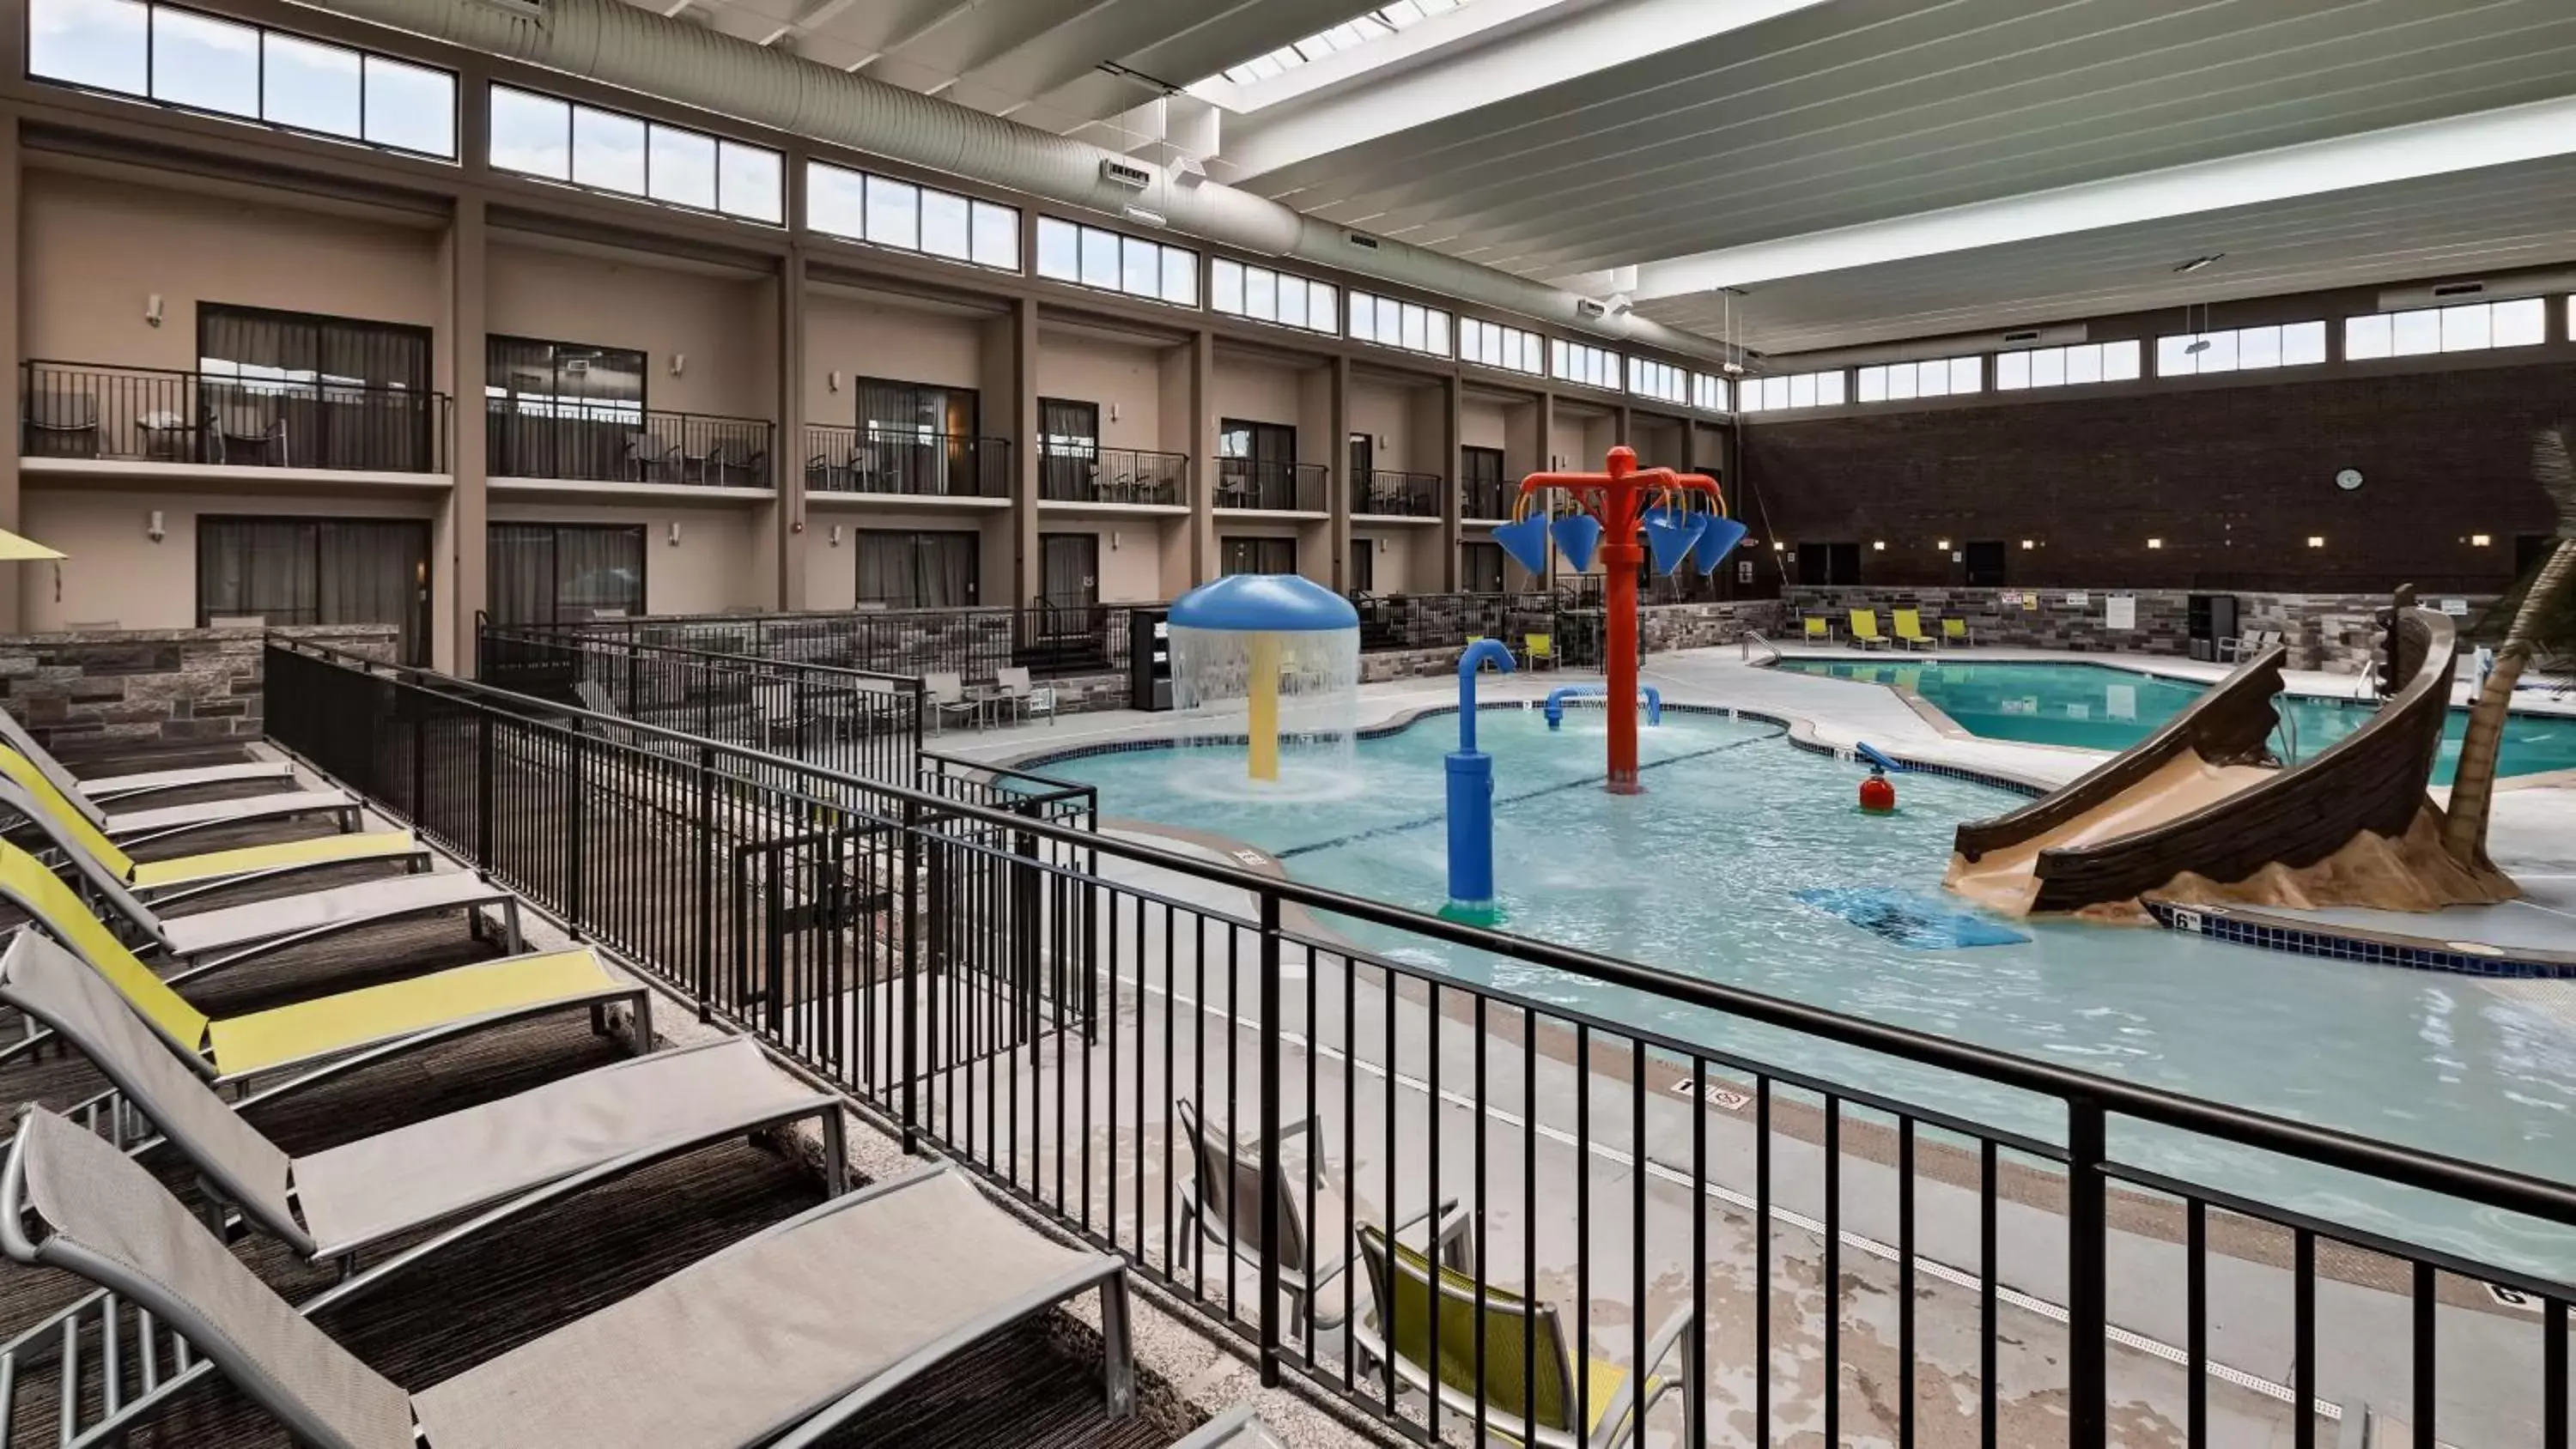 On site, Pool View in Best Western Plus Bloomington Hotel